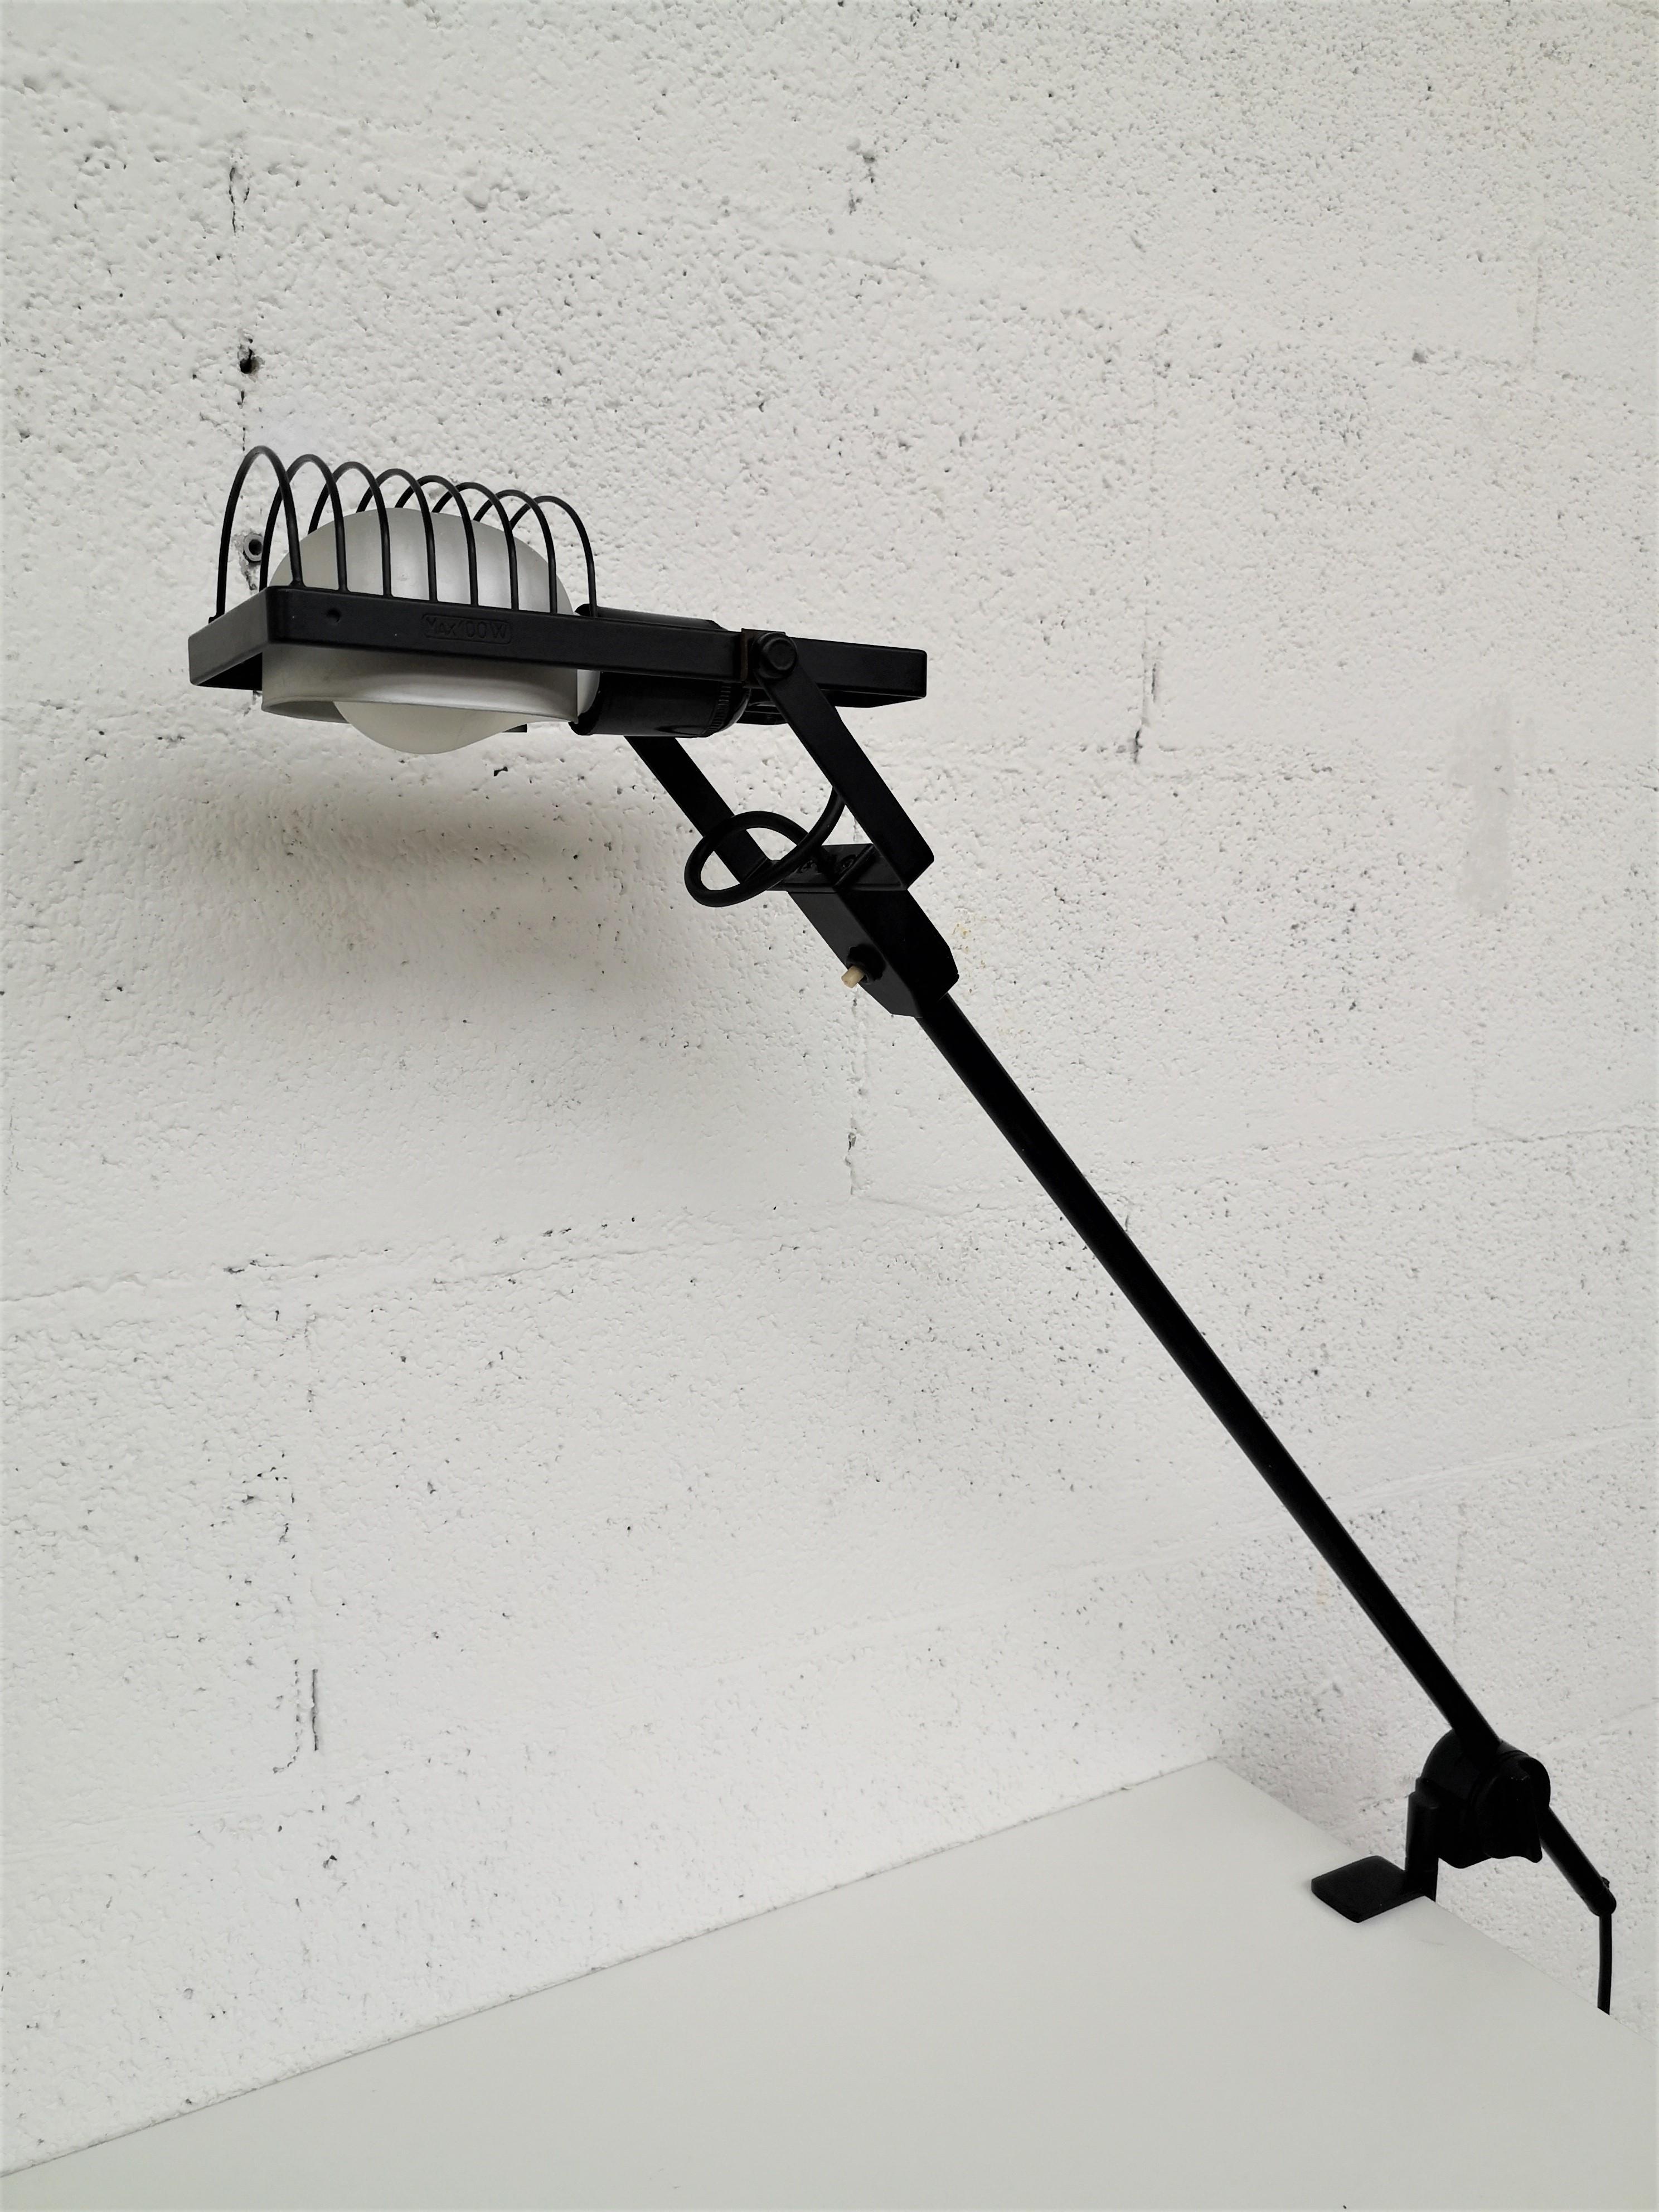 Très rare lampe de table Sintesi Morsetto conçue par Ernesto Gismondi et produite par Artemide dans les années 1970.
Il s'agit de la version avec bras et pince de fixation.
Structure métallique peinte, diffuseur en aluminium

Fondée dans les